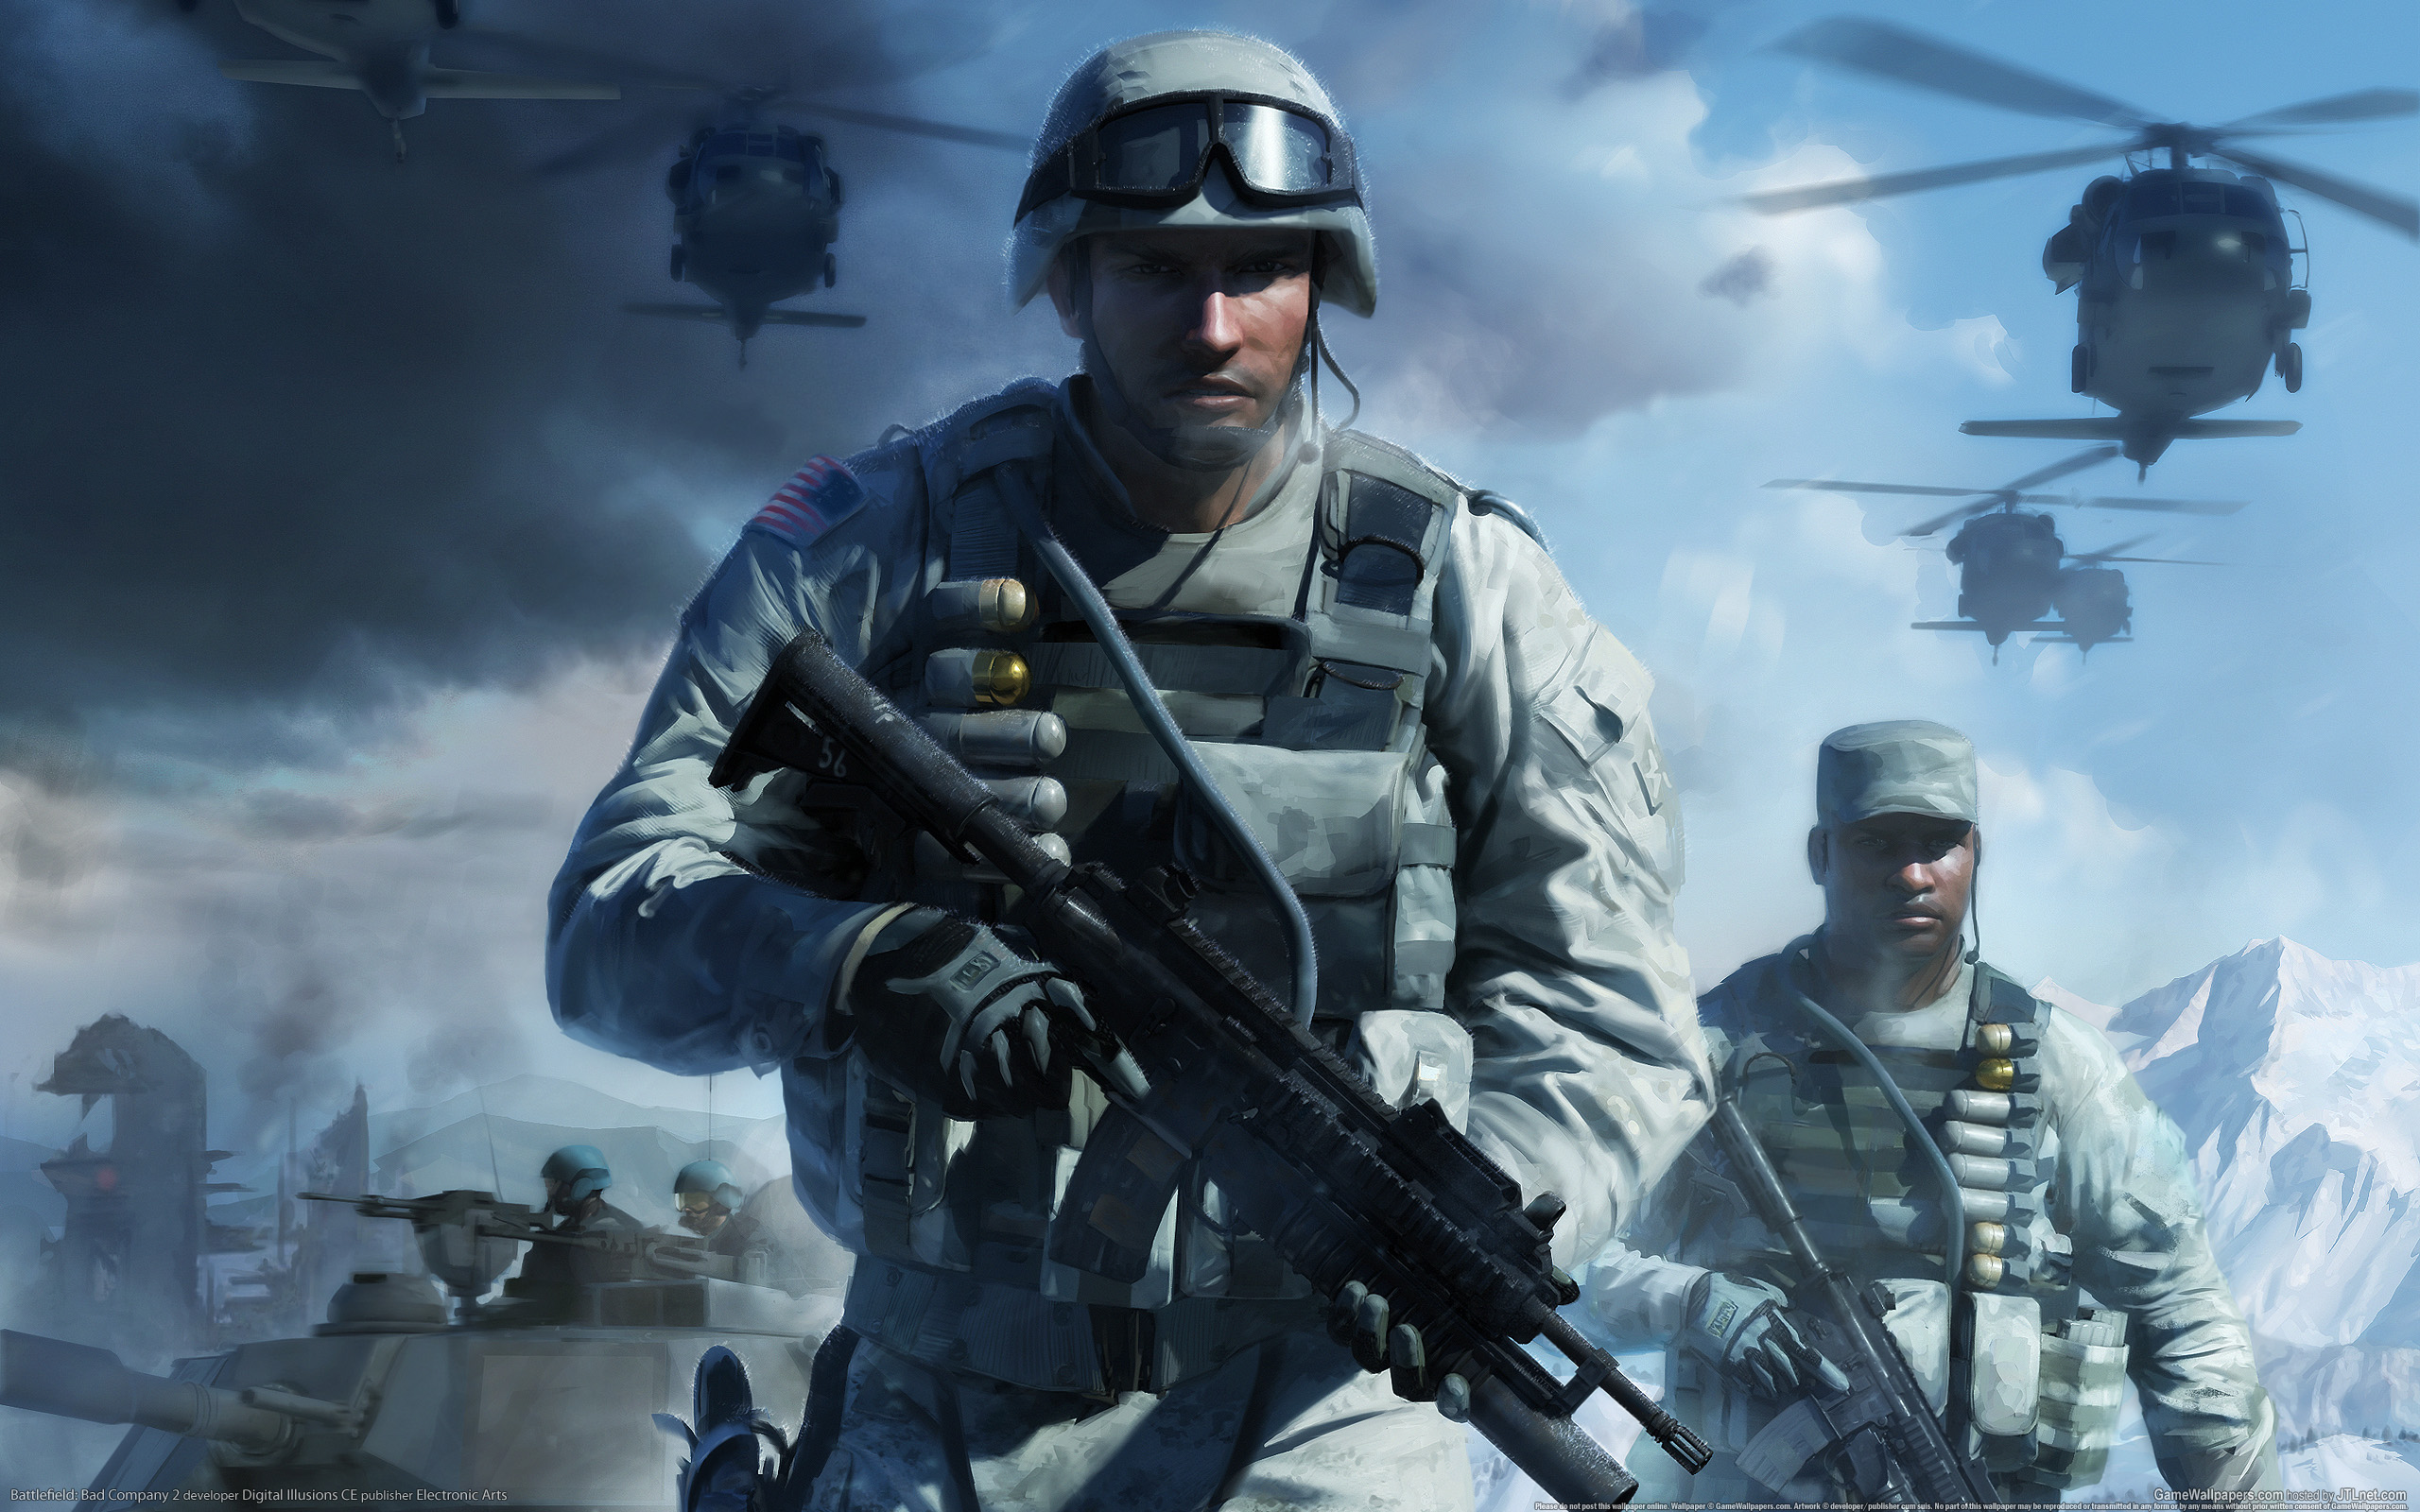 Melhores papéis de parede de Battlefield: Bad Company 2 para tela do telefone